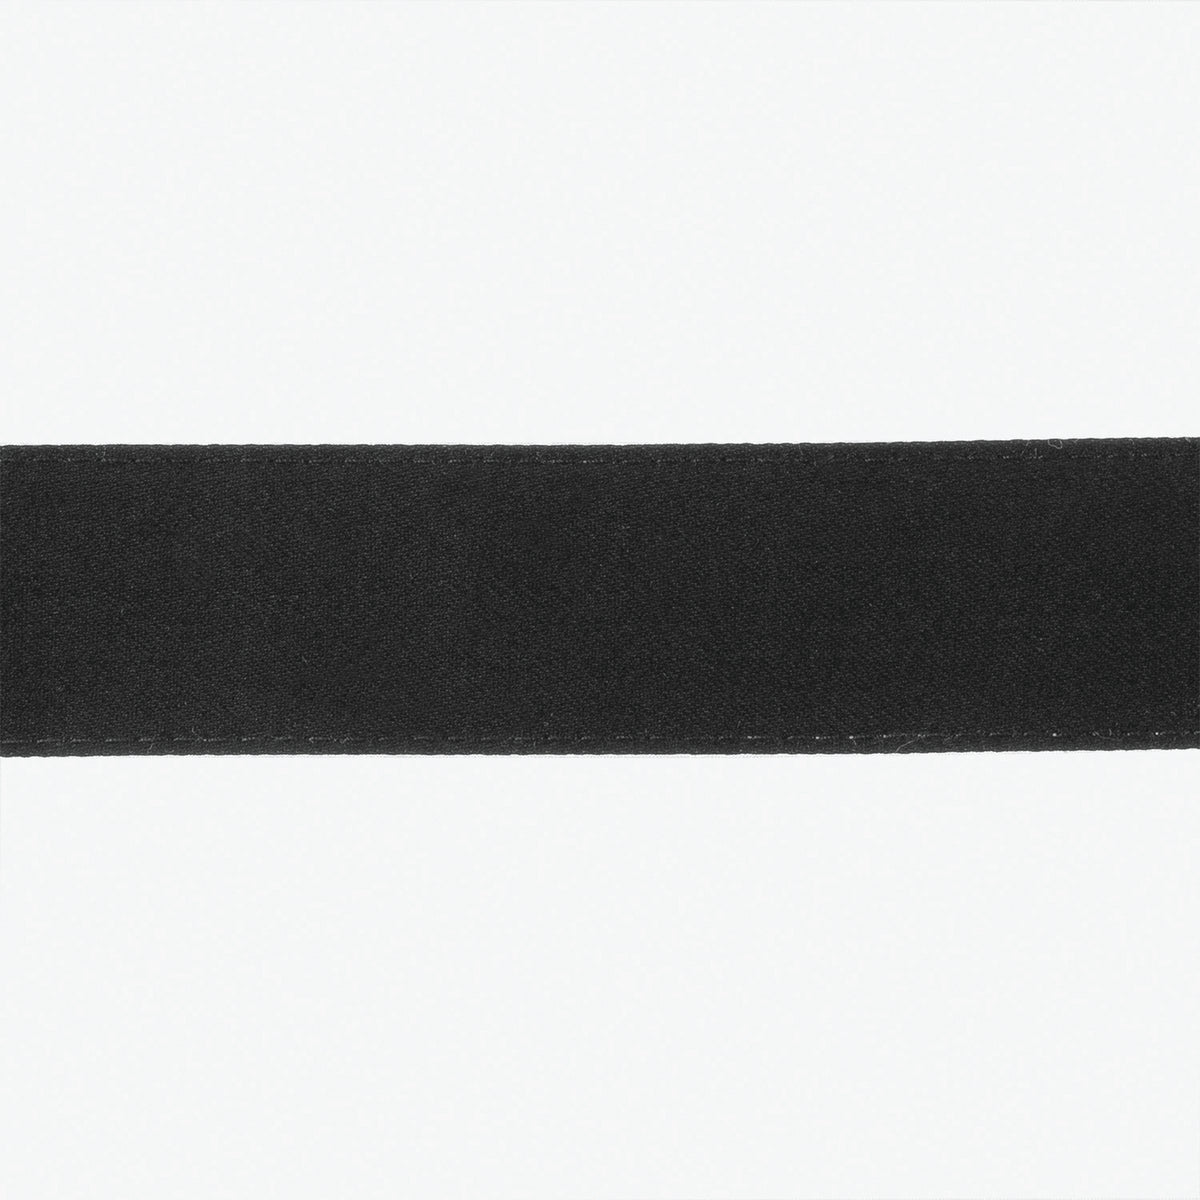 Matouk Lowell Tissue Box Cover Fine Linen Swatch - Black